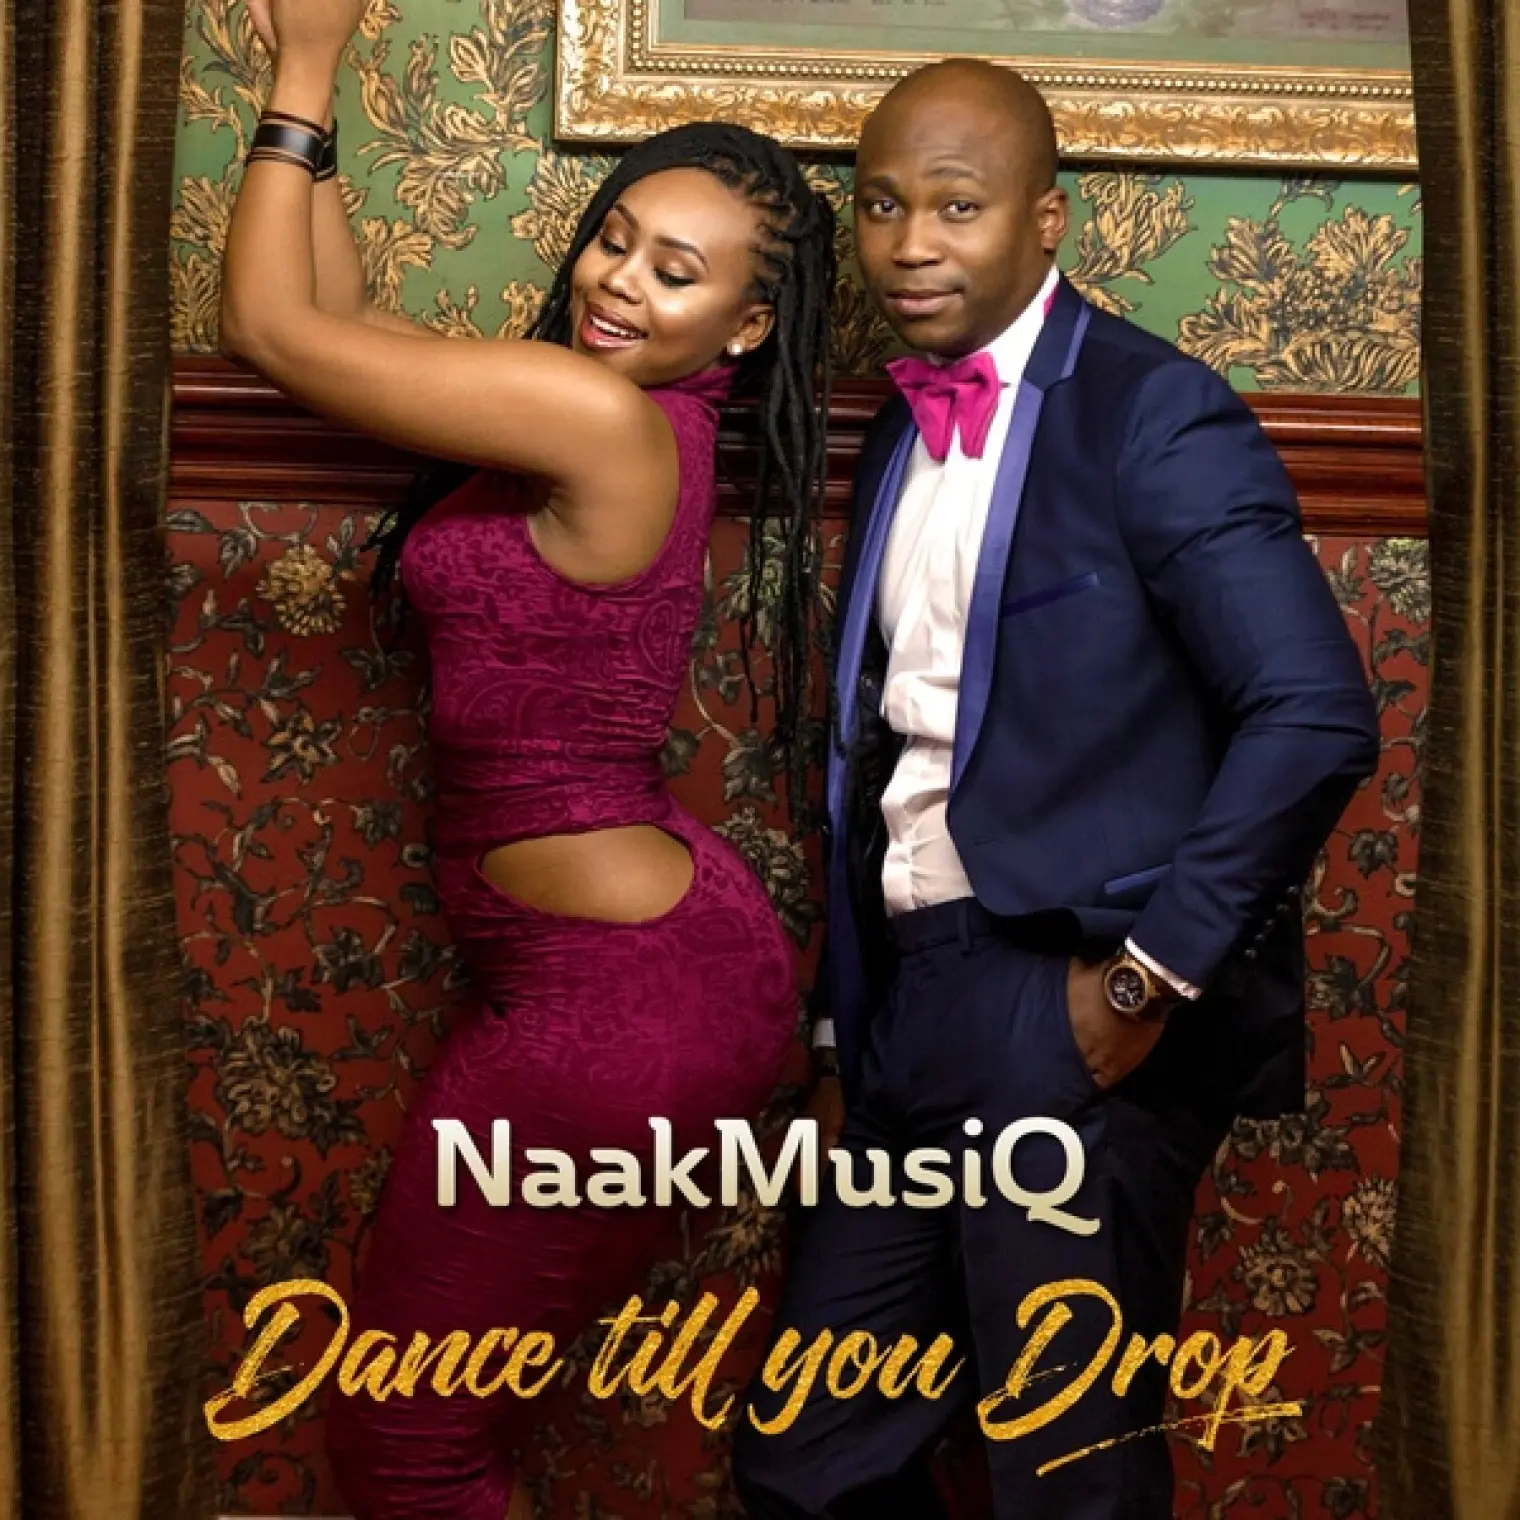 Dance Till You Drop -  NaakMusiQ 